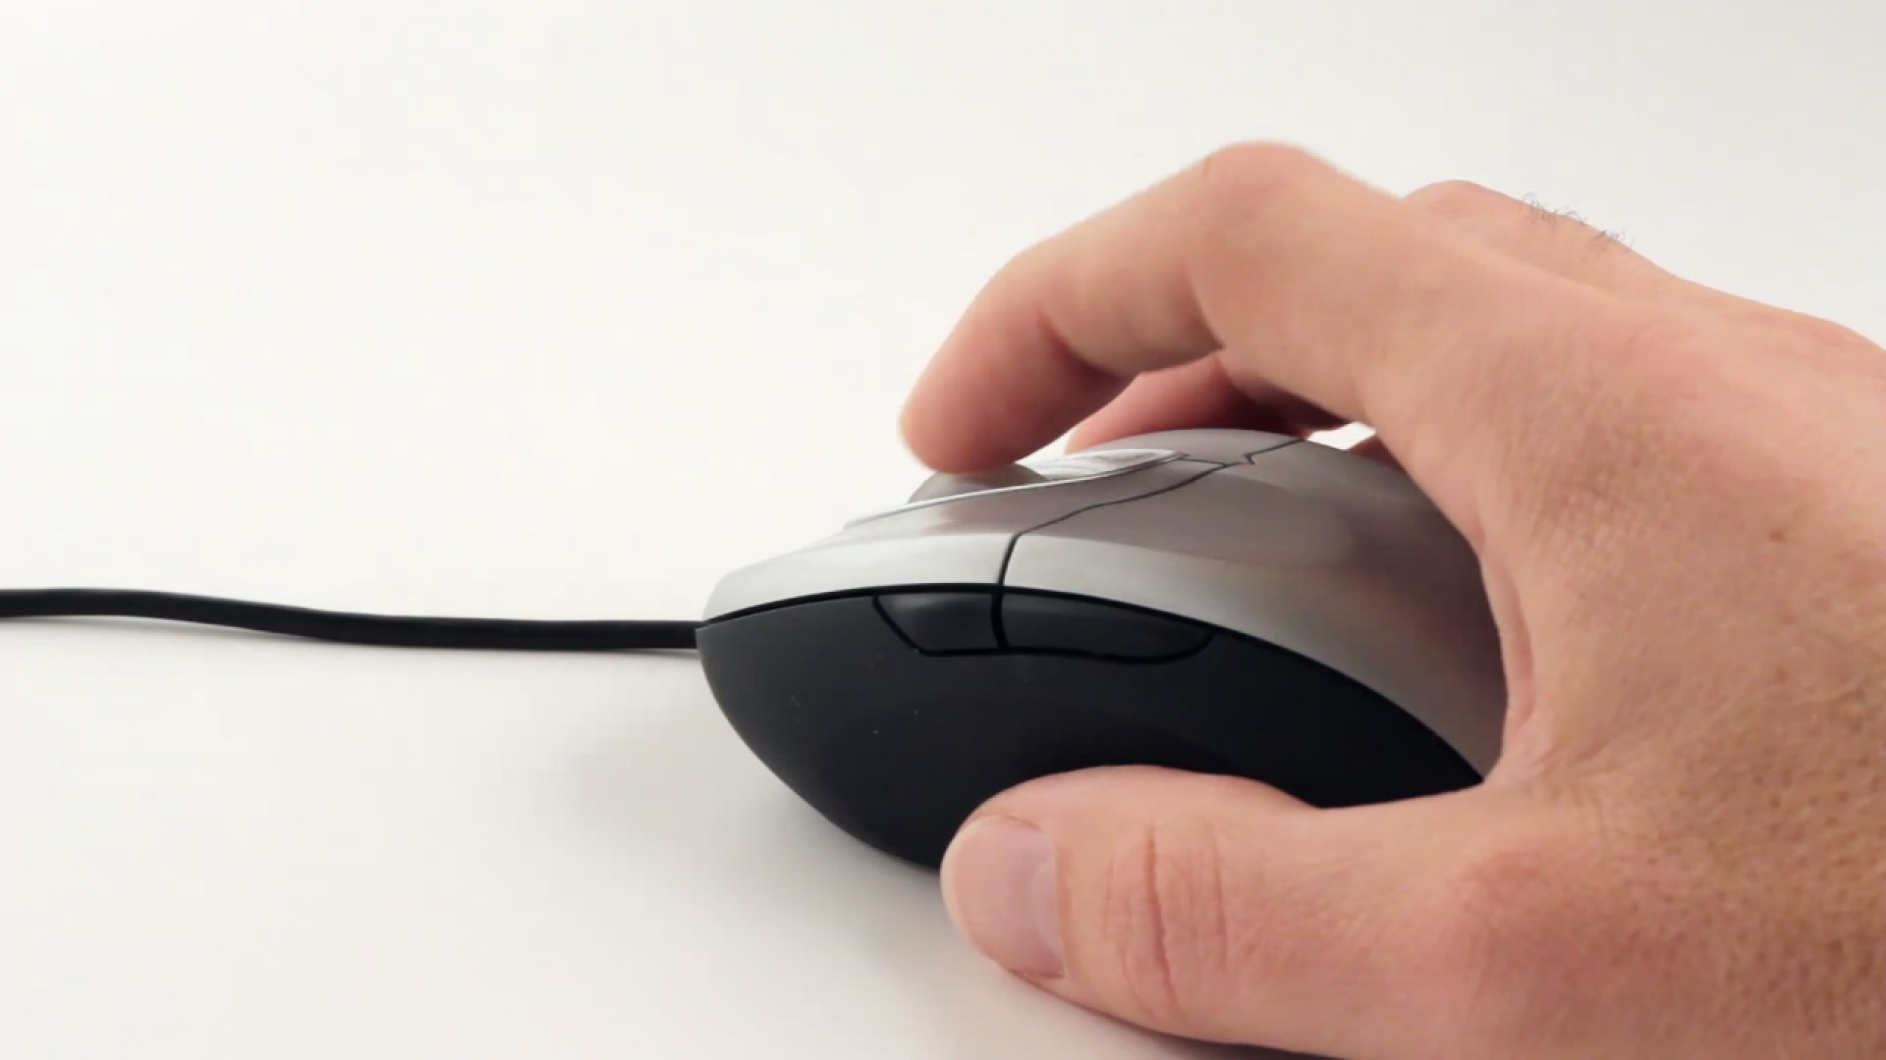 Счетчик клика мыши. Компьютерная мышка в руке. Рука на мышке. Нажатие мышки. Мышь для ноутбука на палец.